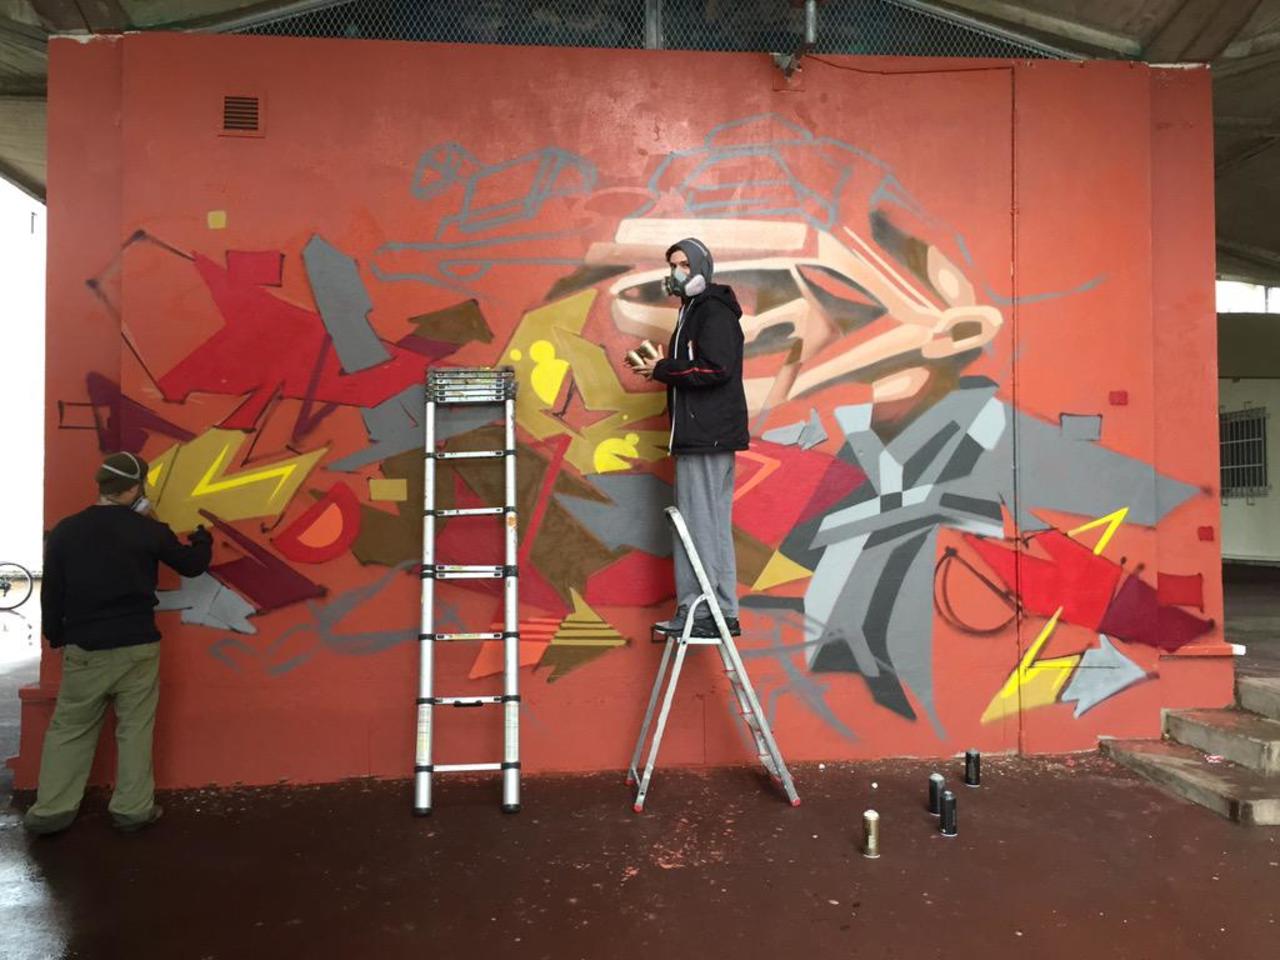 La pluie n'arrête pas les artistes de #Vitry. @takt et @tacos au travail. #graffiti #mural http://t.co/2l6iLbtwqT